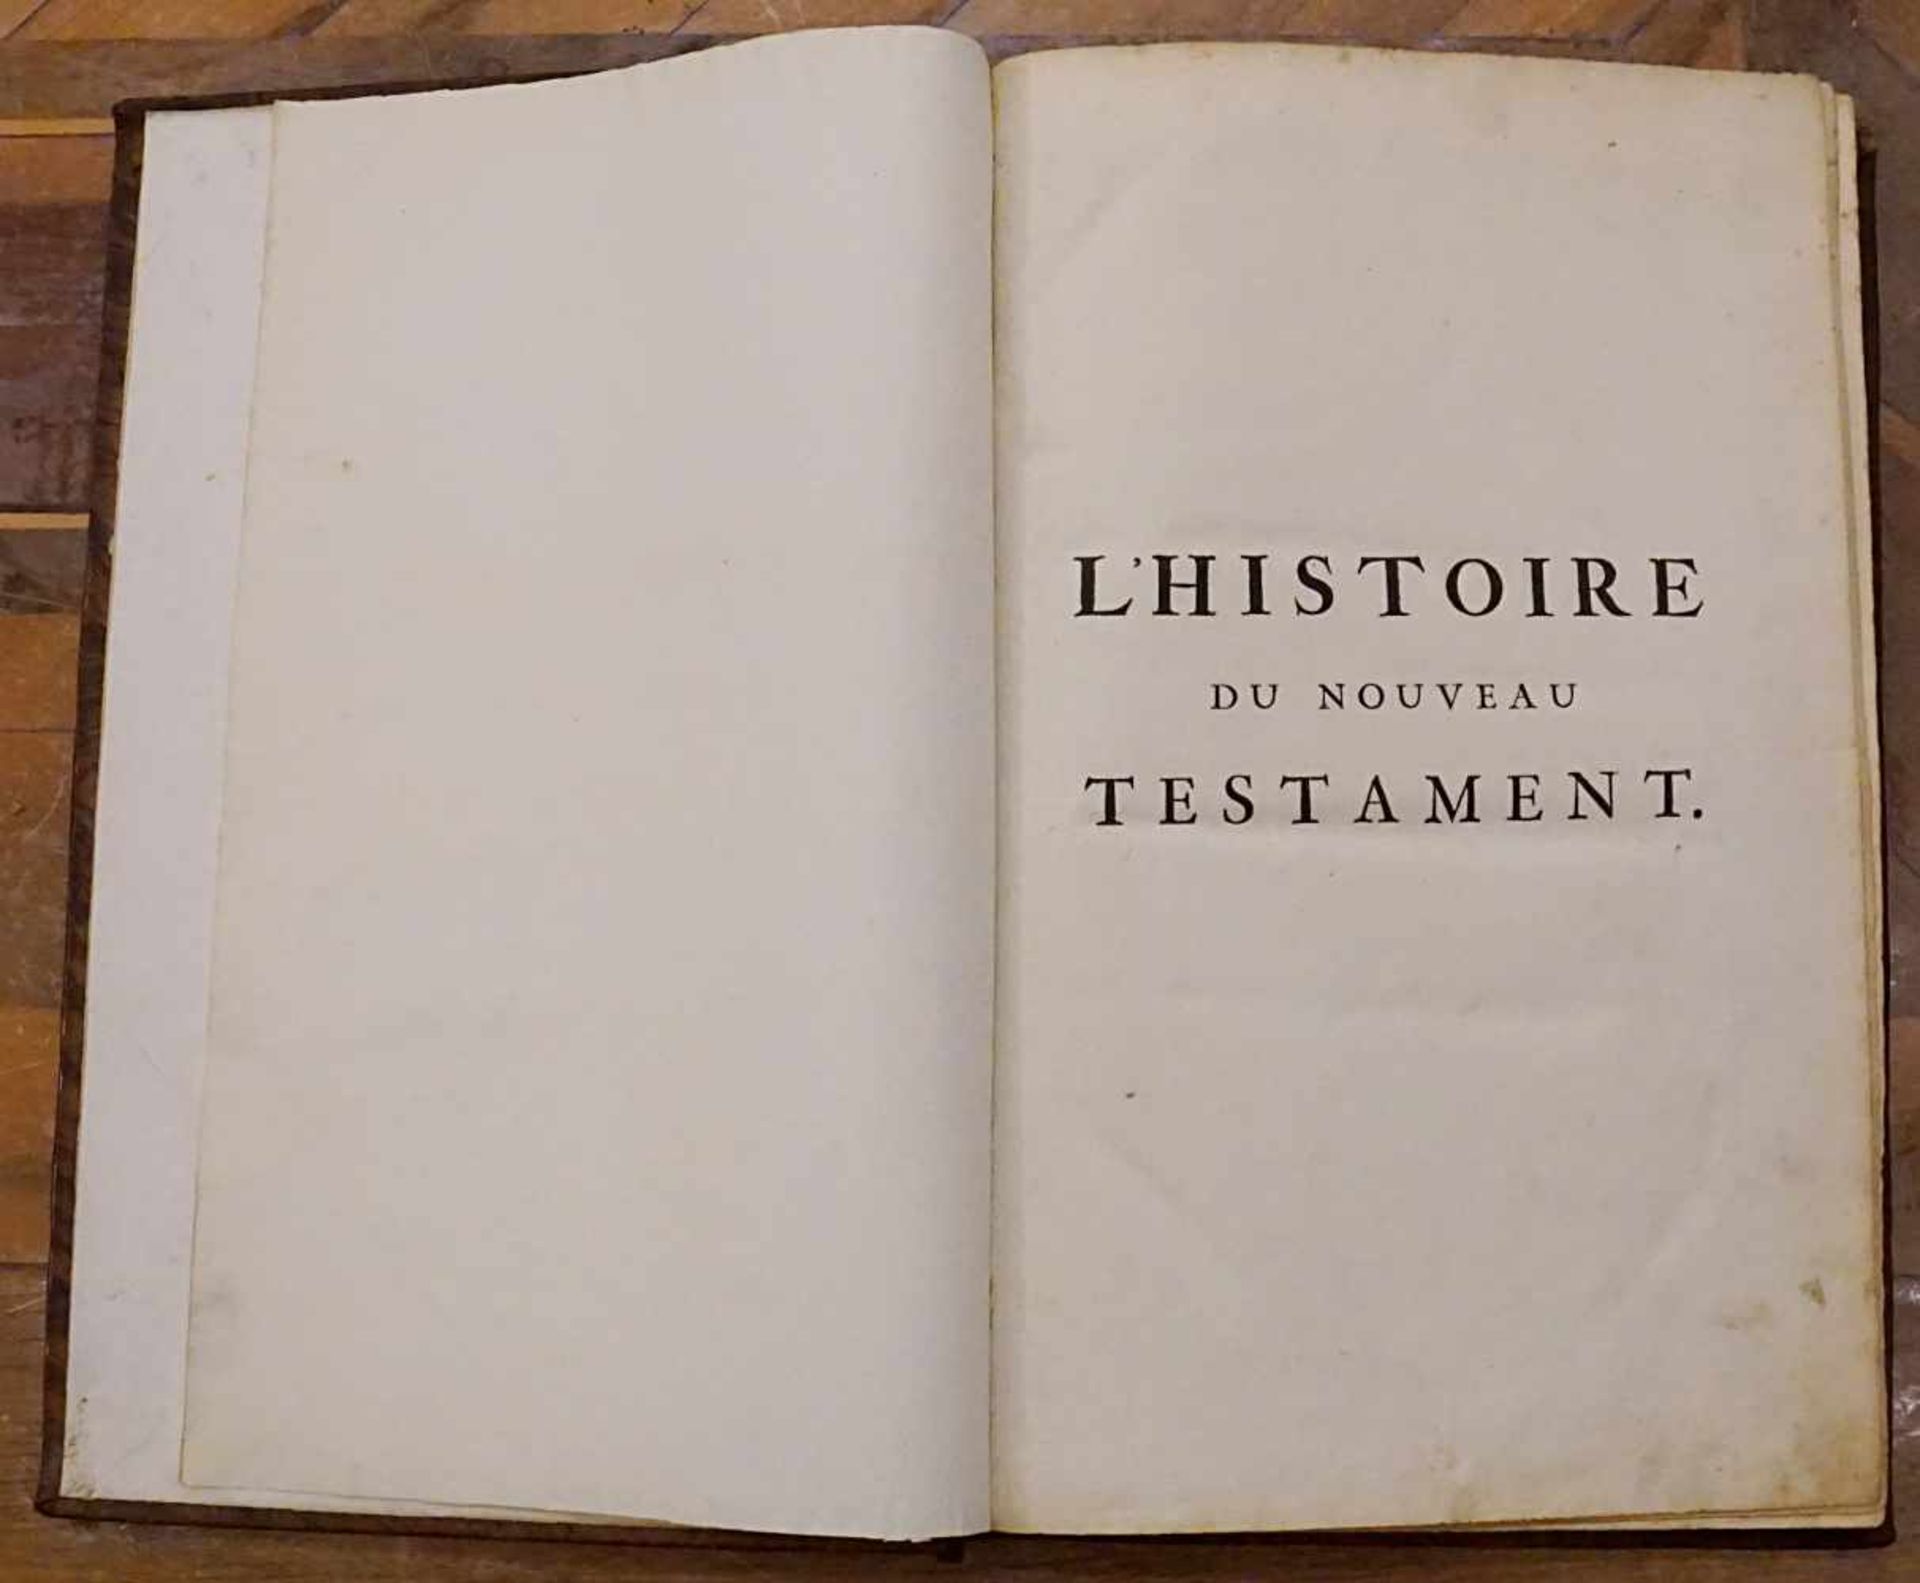 Buch "L'Histoire du Nouveau Testament", Herausgeber Pierre MORTIER, Amsterdam 1700,Titelkupfer, - Bild 3 aus 3